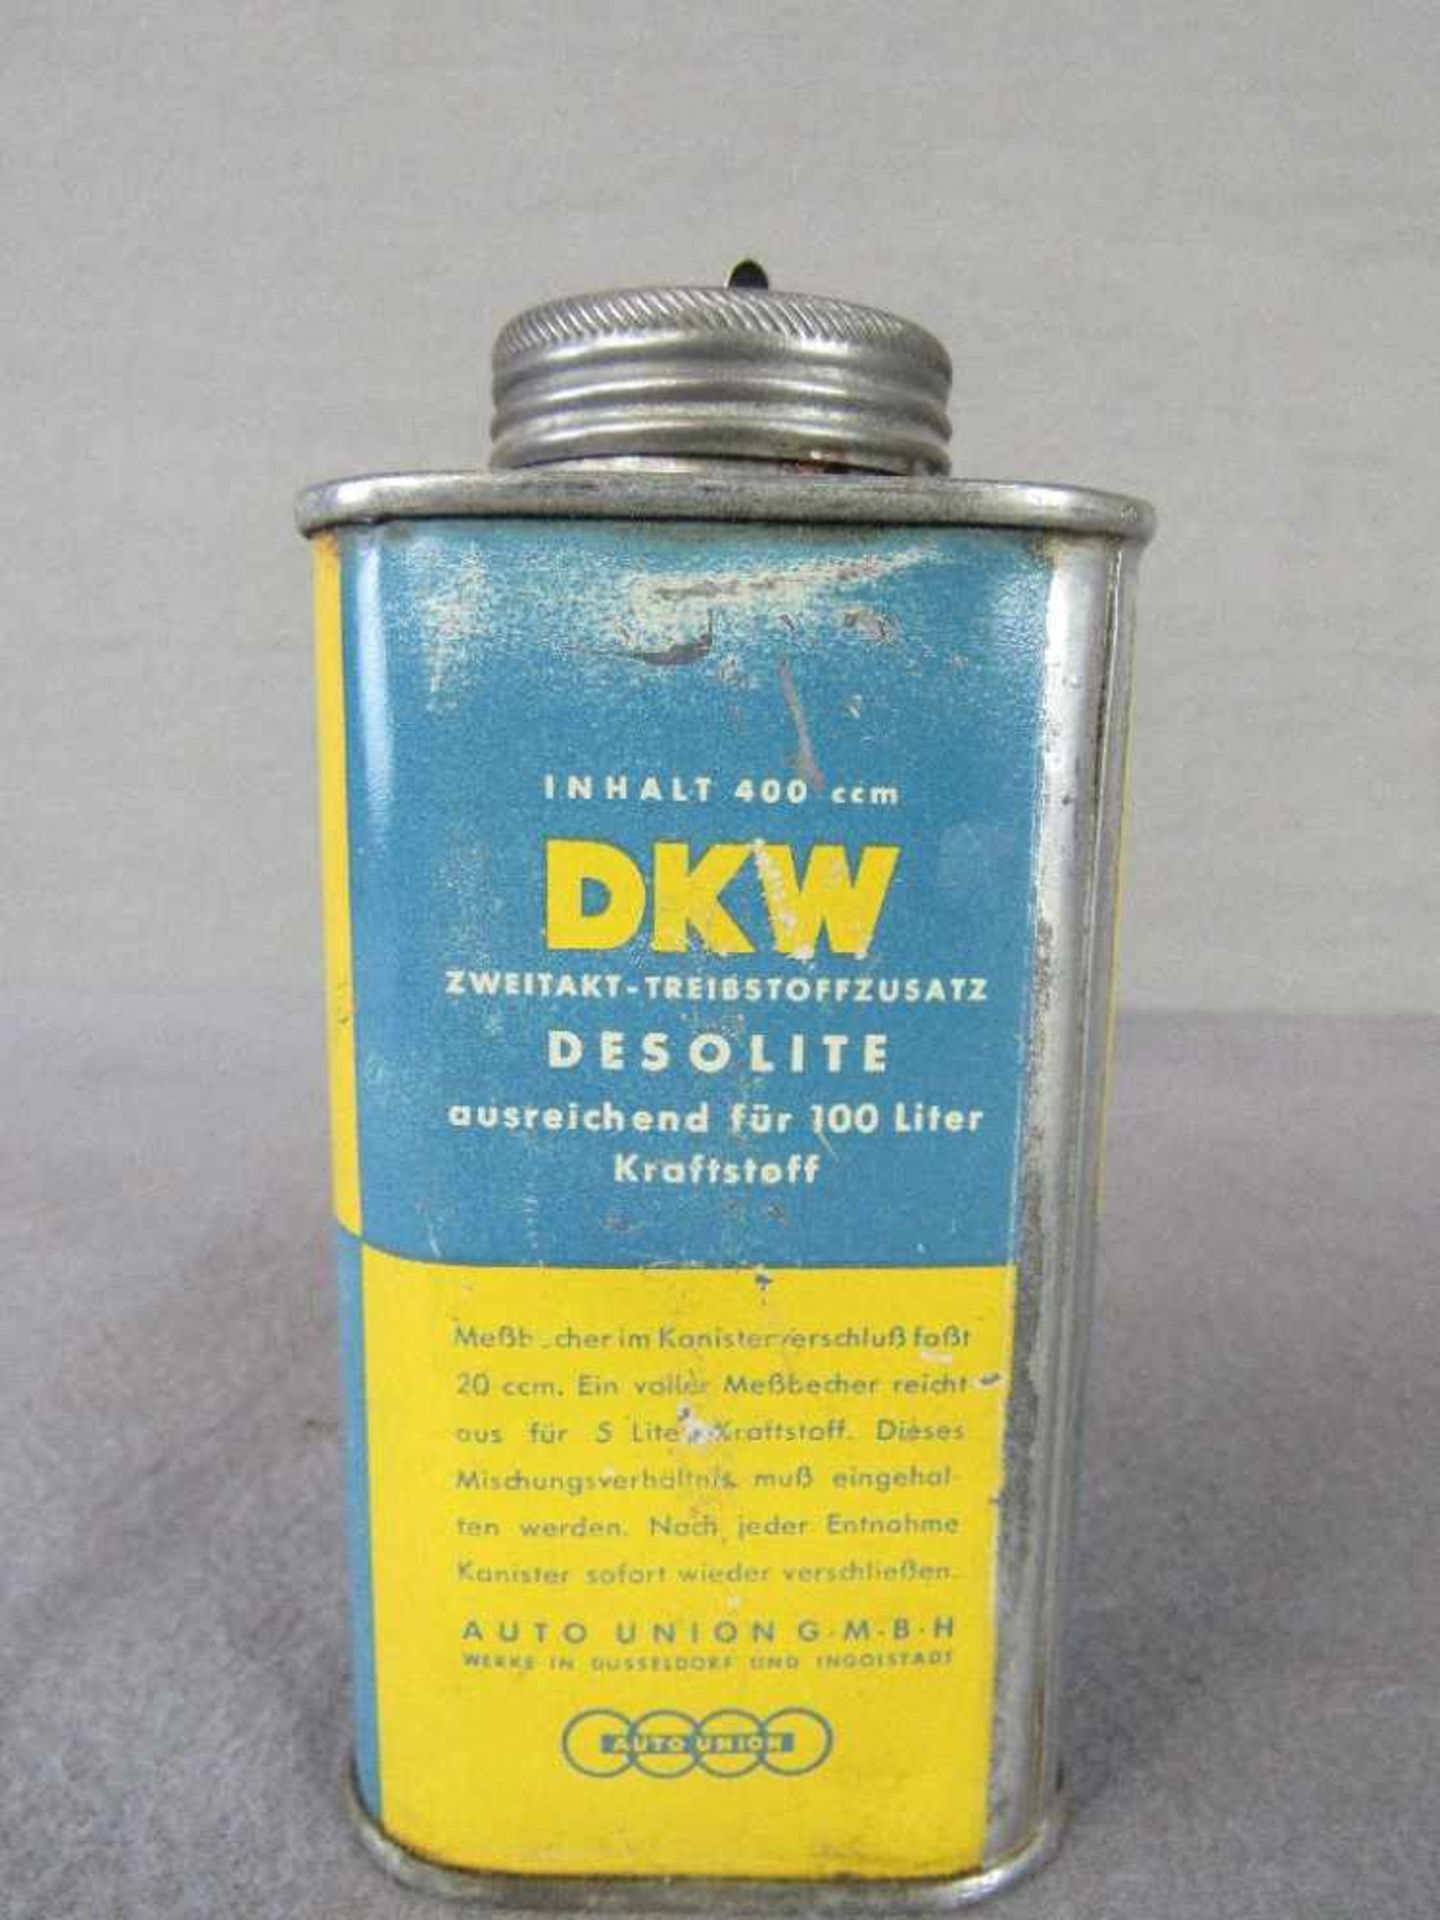 Zweitakt Krafstoffzusatz DKW Oldtimer Blech 13cm hoch - Image 2 of 4